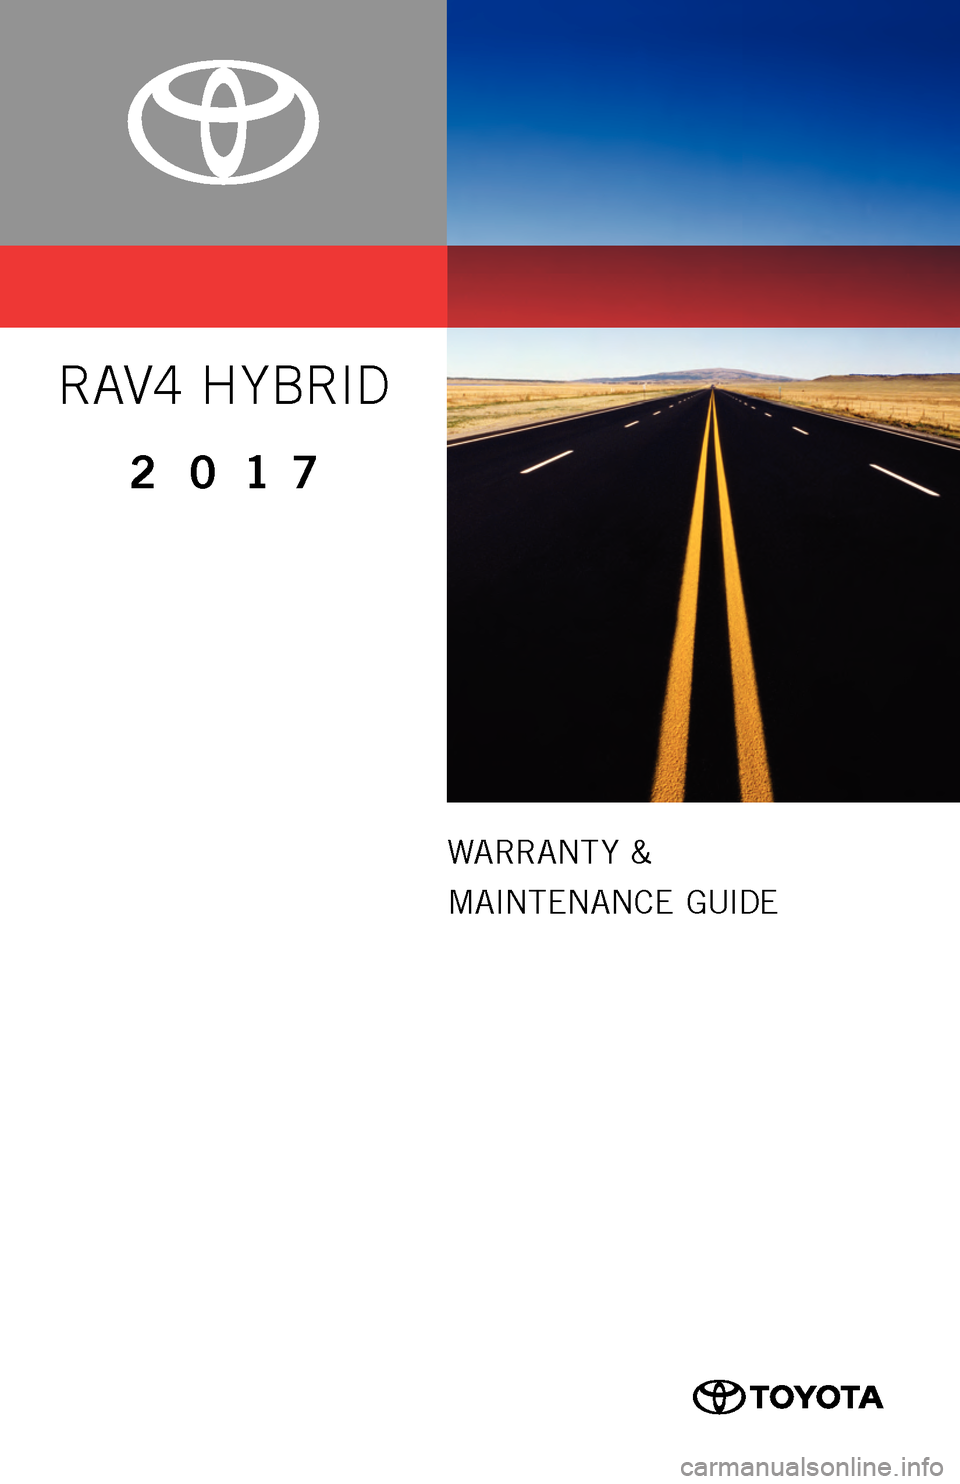 TOYOTA RAV4 HYBRID 2017 XA40 / 4.G Warranty And Maintenance Guide 0050517WMGRAVHV
WARRANT Y &
MAINTENANCE  GUIDE
RAV4 H YBRID
2017
16-TCS-09458_WMG_RAV4_Hybrid_2_0F_lm.indd   27/25/16   3:07 PM  